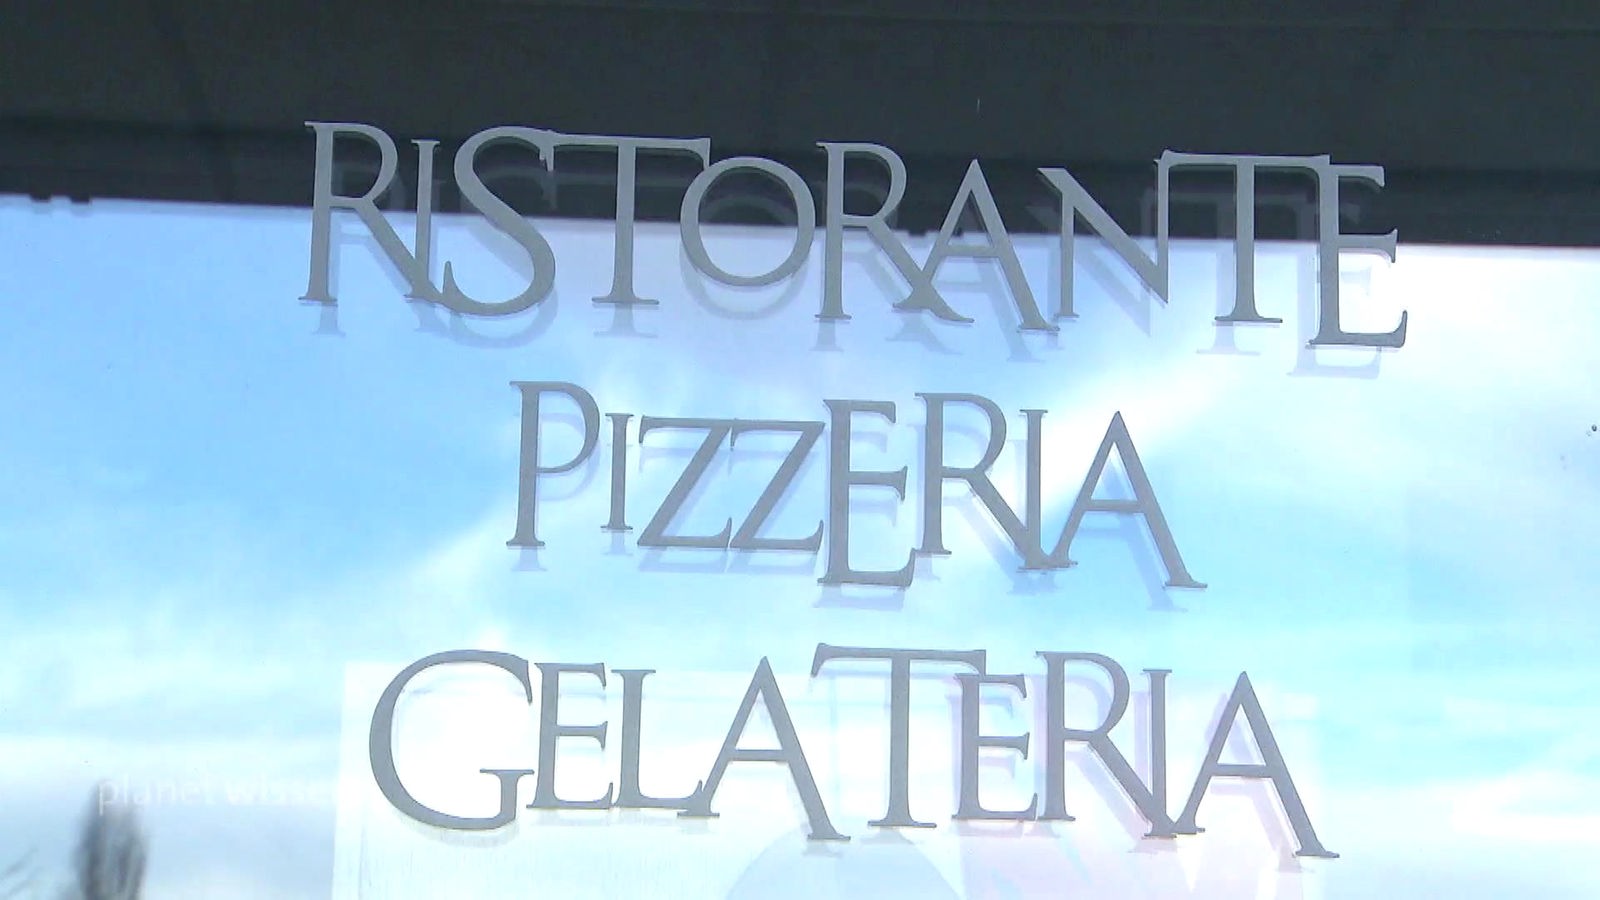 Fensterscheibe auf der der Schriftzug 'Ristorante Pizzeria Gelateria' angebracht ist.